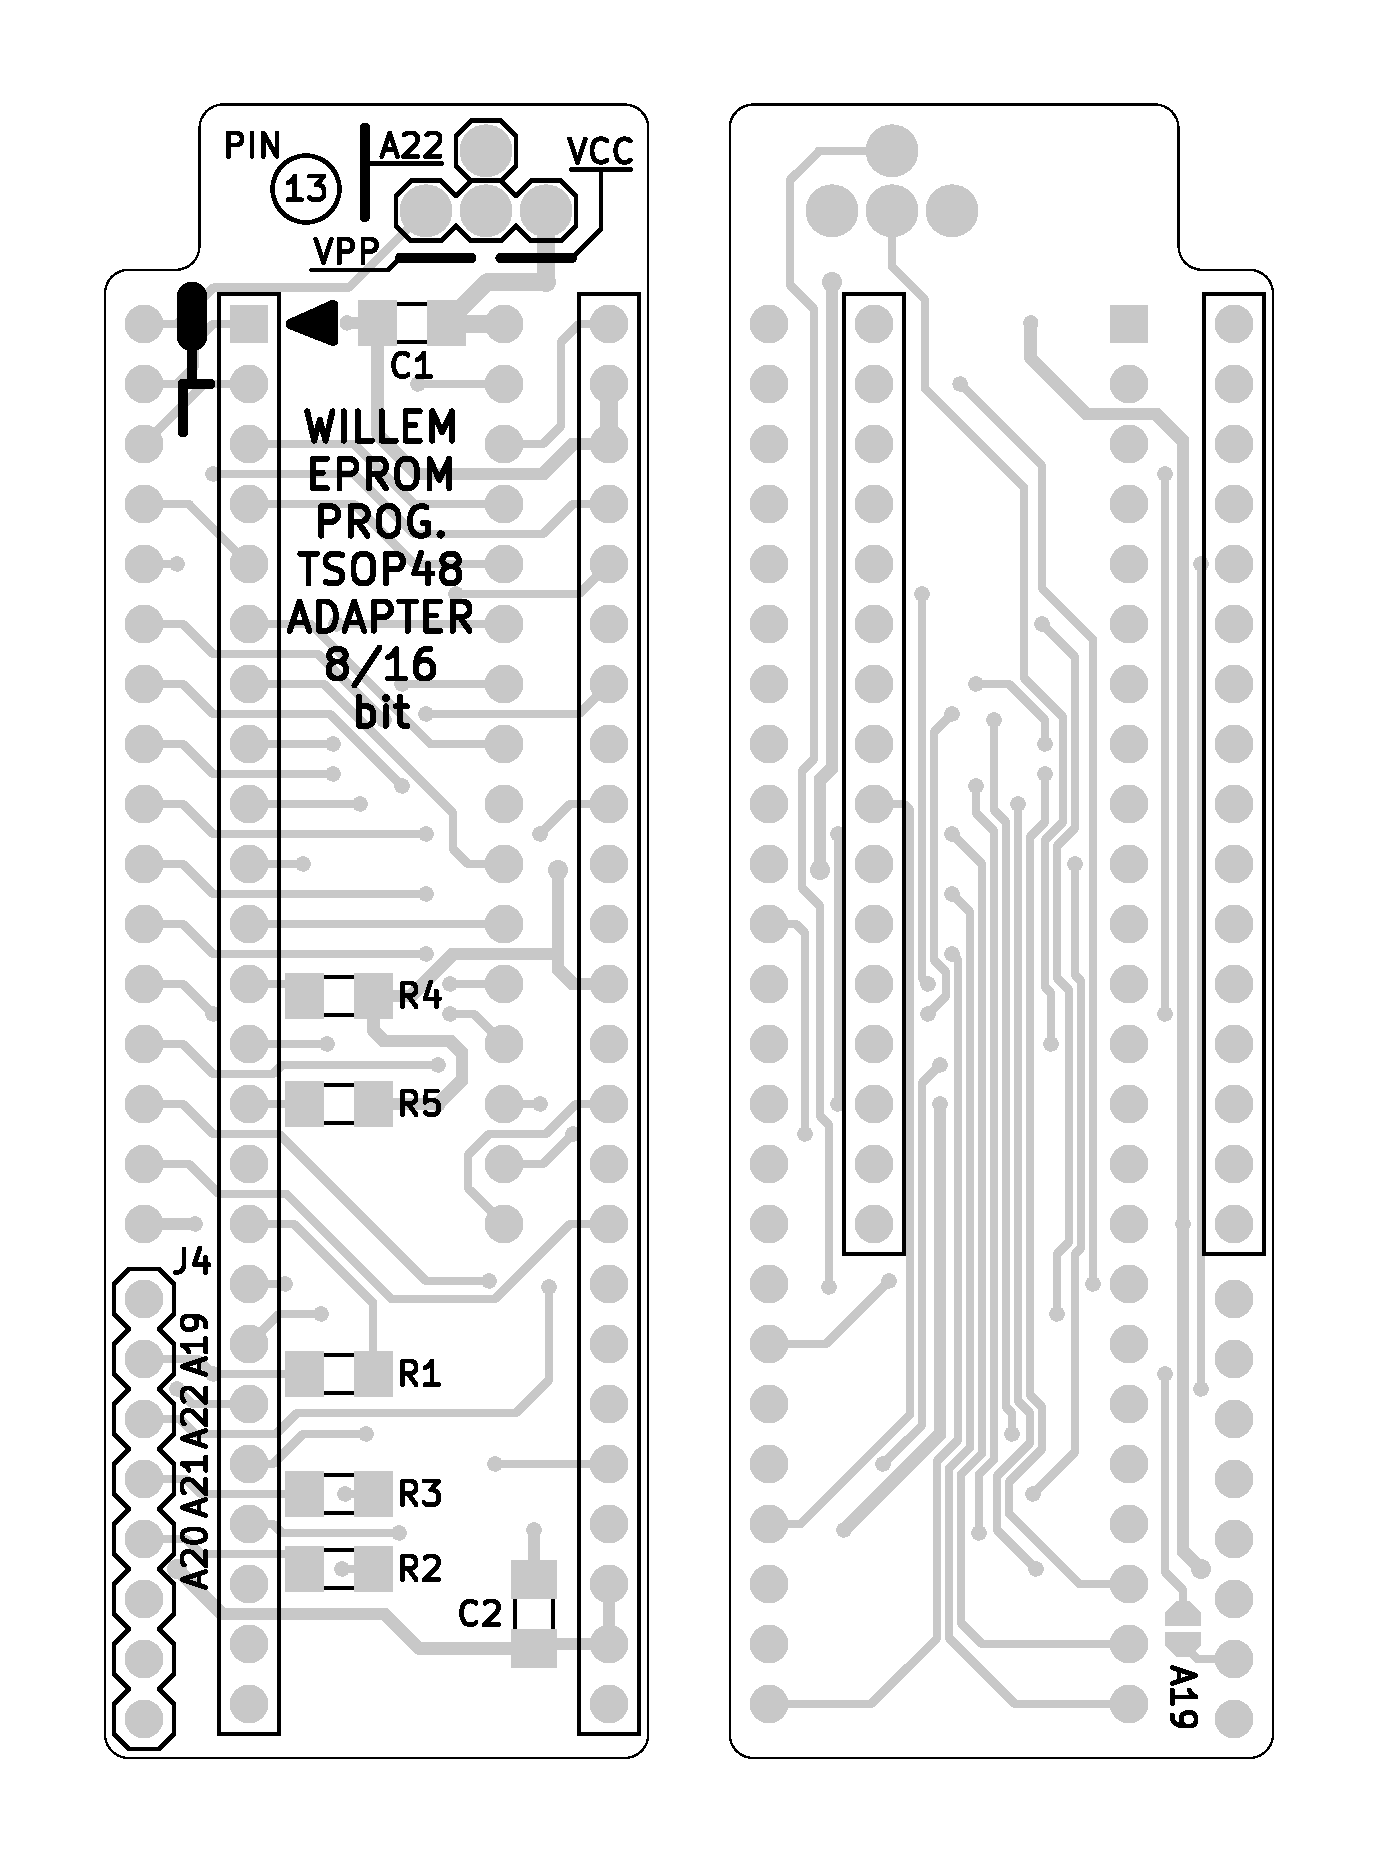 Willeprog TSOP48 8/16 bit Adapter - Layout